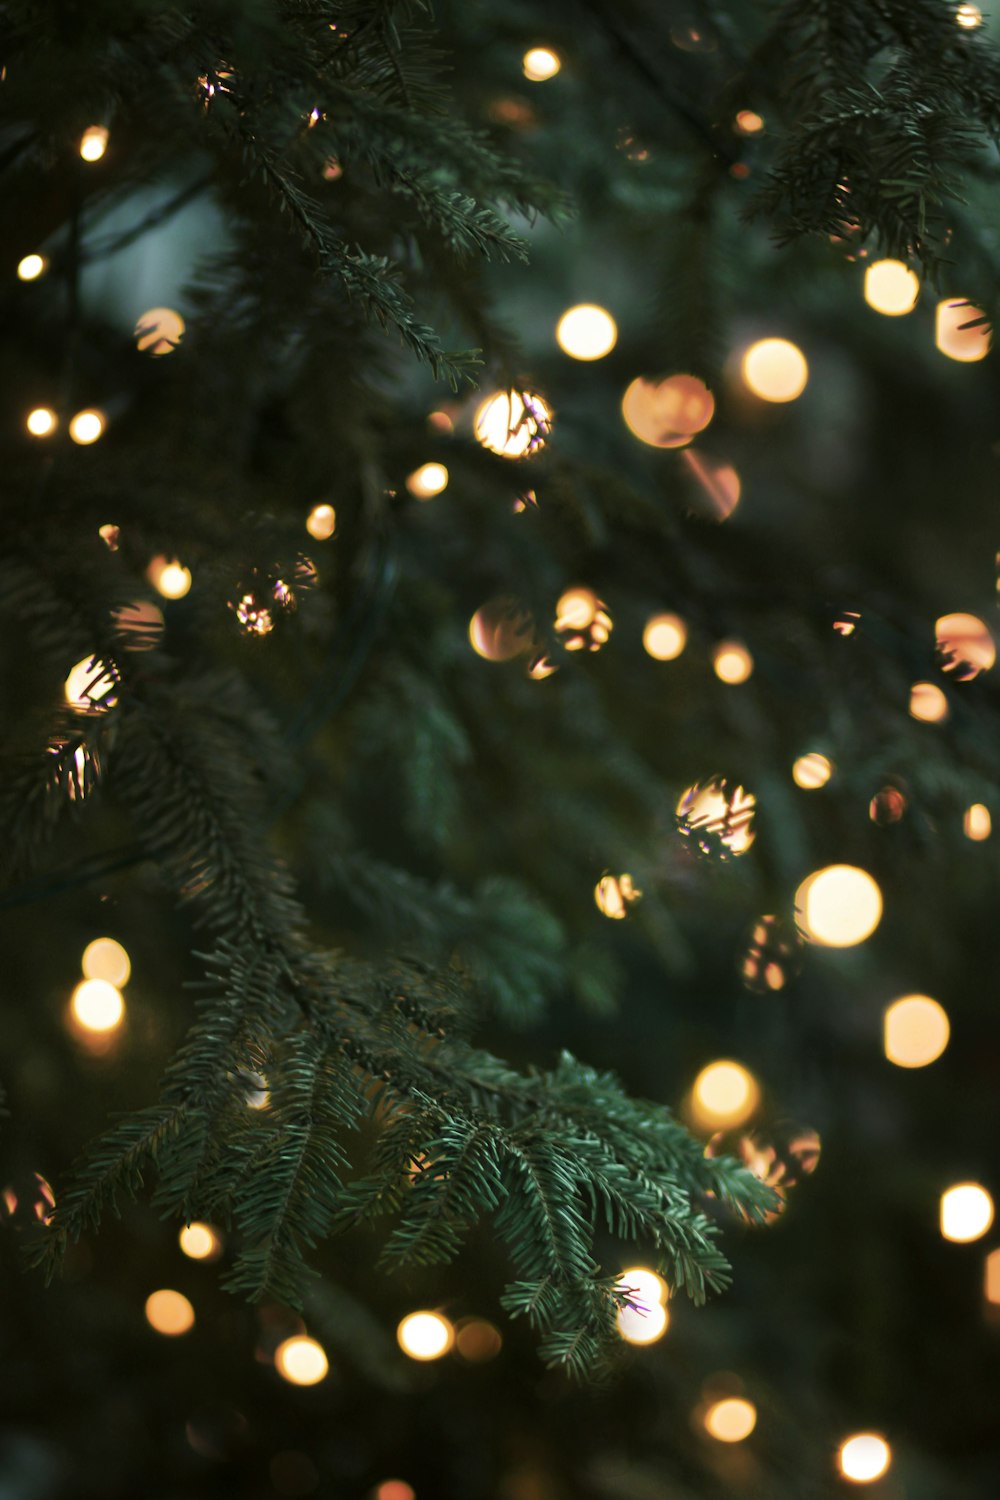 Hãy đắm mình trong không khí Giáng sinh với hình nền ánh sáng rực rỡ. Những chùm đèn đẹp lung linh và nền nền đen tối ẩm áp, sẽ giúp bạn chiêm ngưỡng vẻ đẹp đầy ấn tượng của mùa lễ hội.